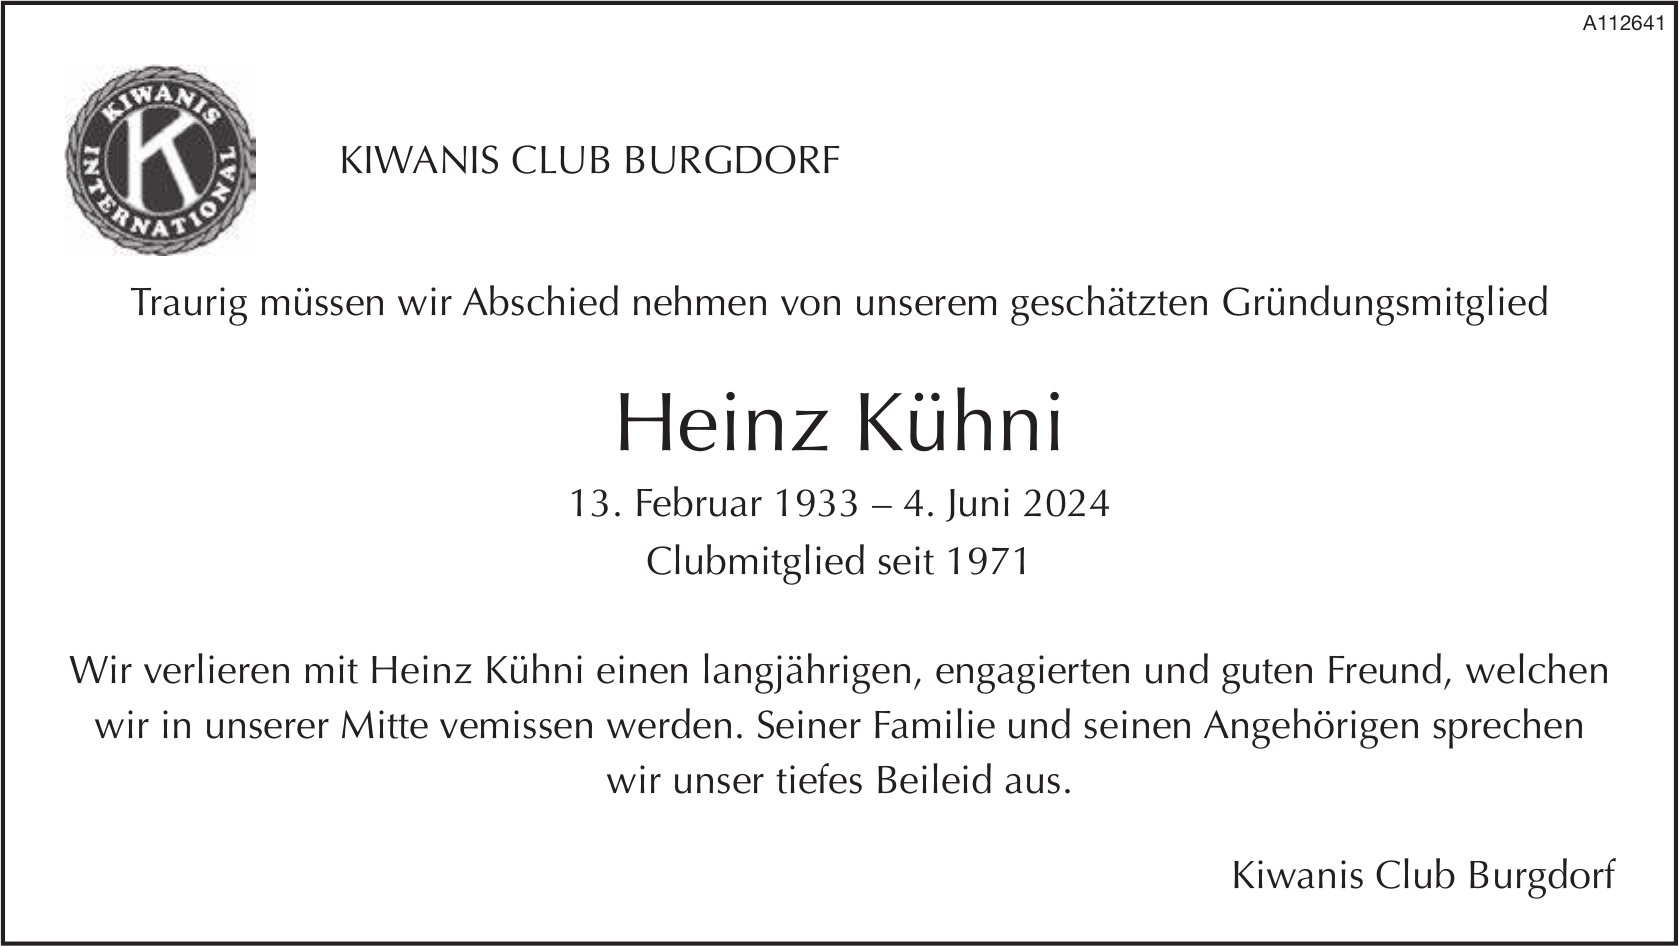 Heinz Kühni, Juni 2024 / TA